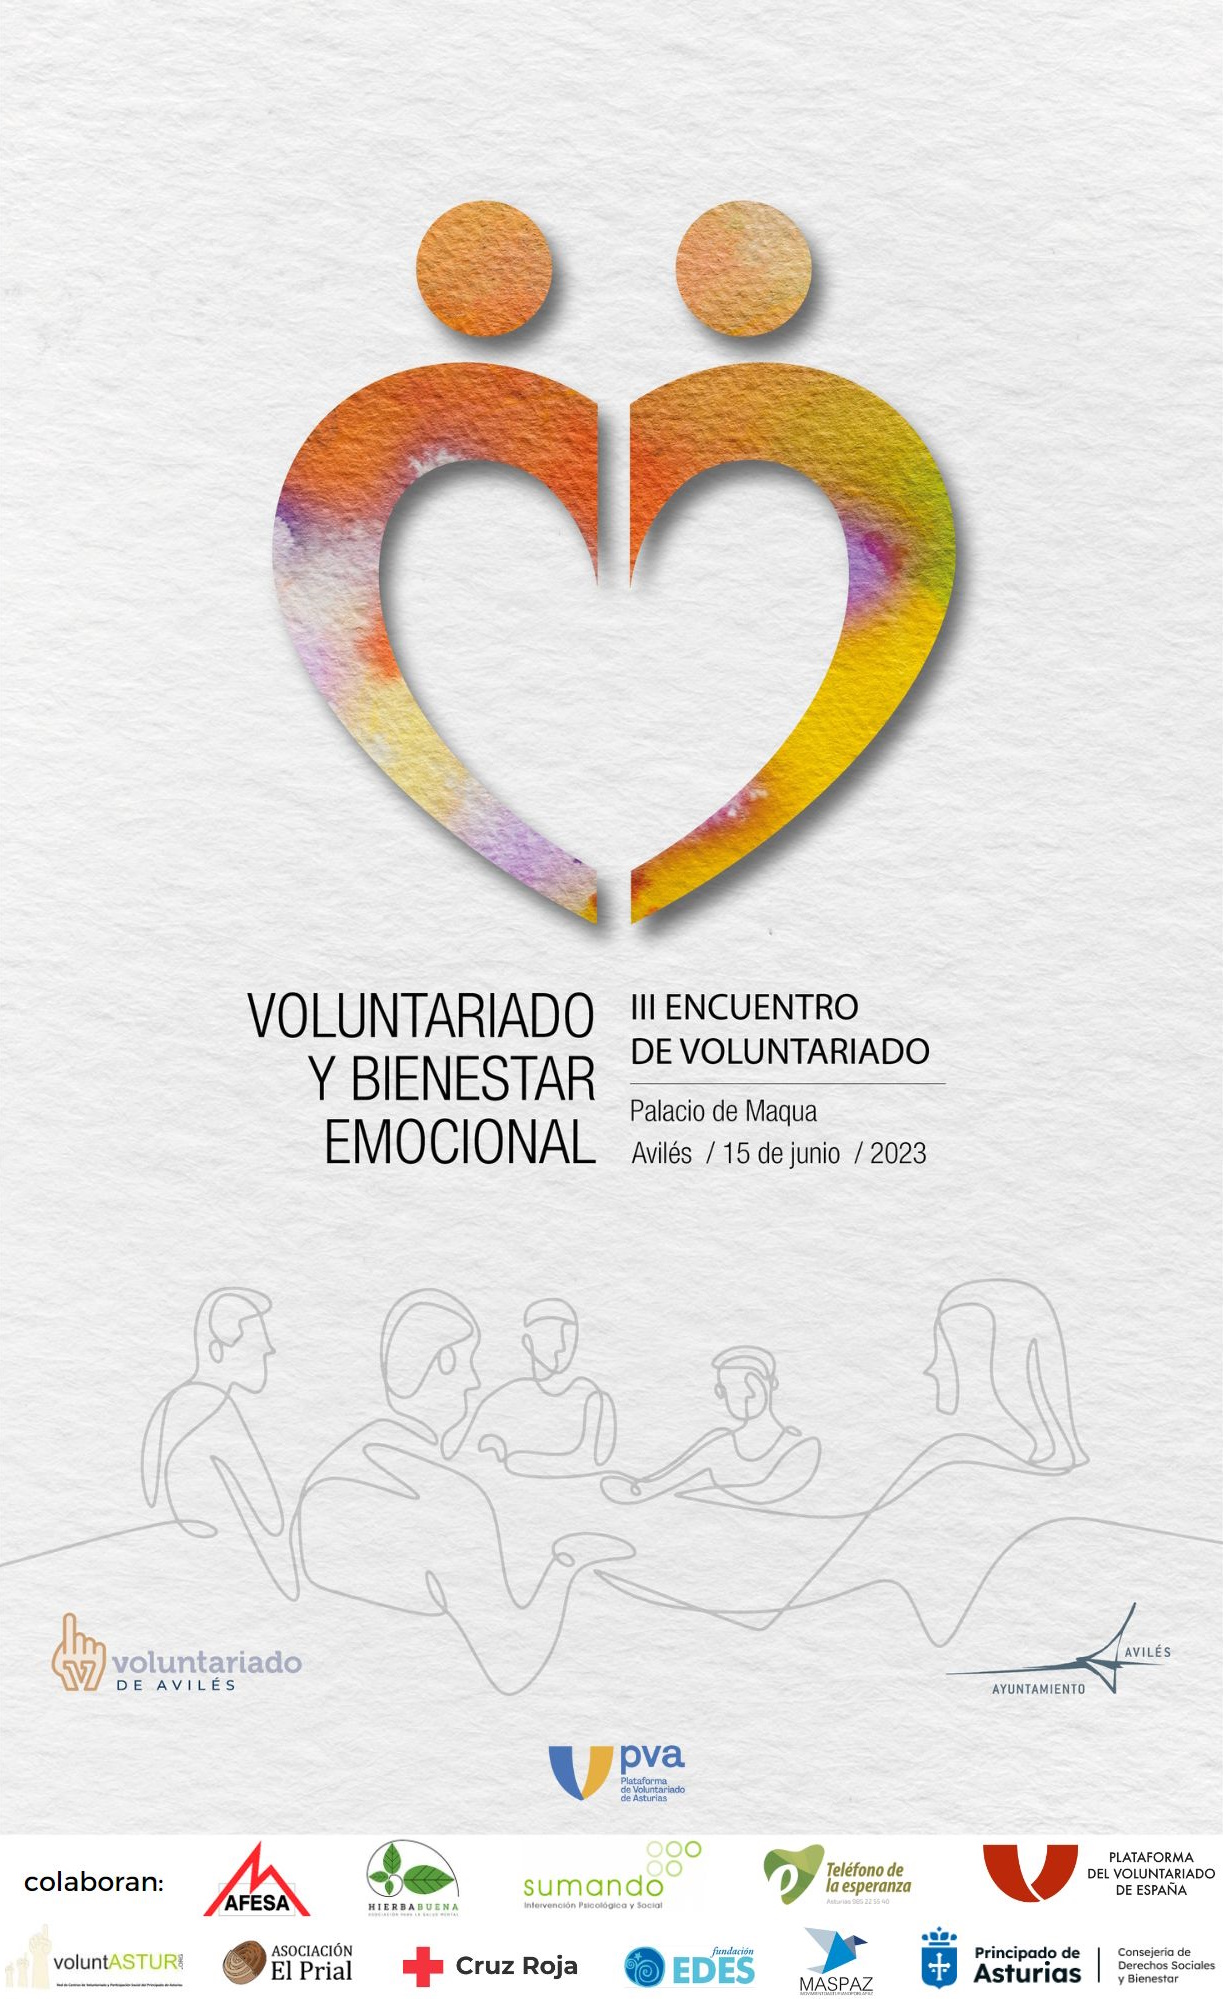 III Encuentro de voluntariado de Avilés: “Voluntariado y bienestar emocional”